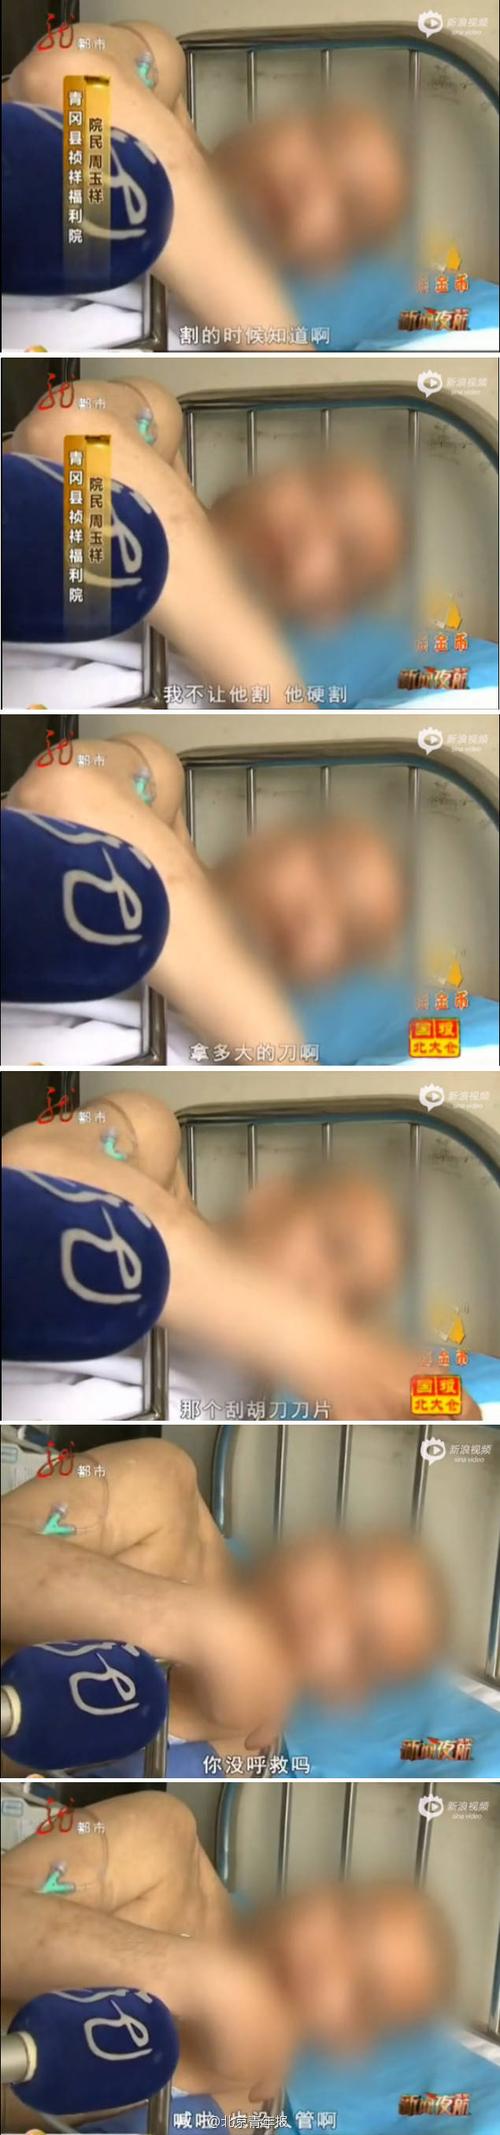 视频:黑龙江4老人养老院被切睾丸 称呼救没人管